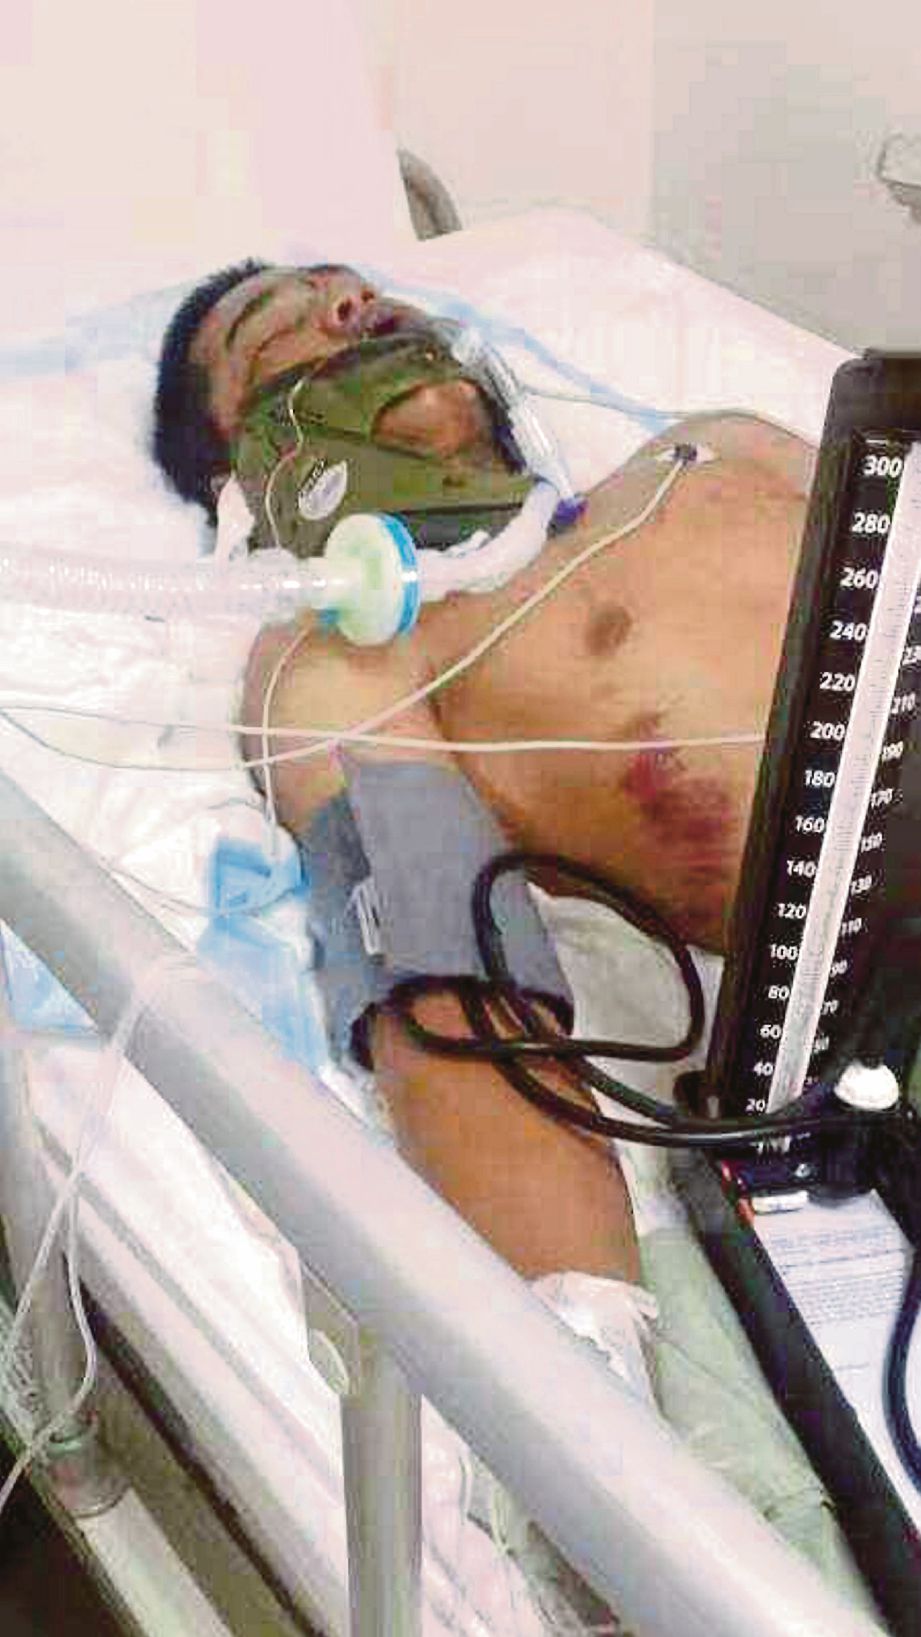  Muhammad Shahrul Asri ketika dirawat di Hospital Melaka.